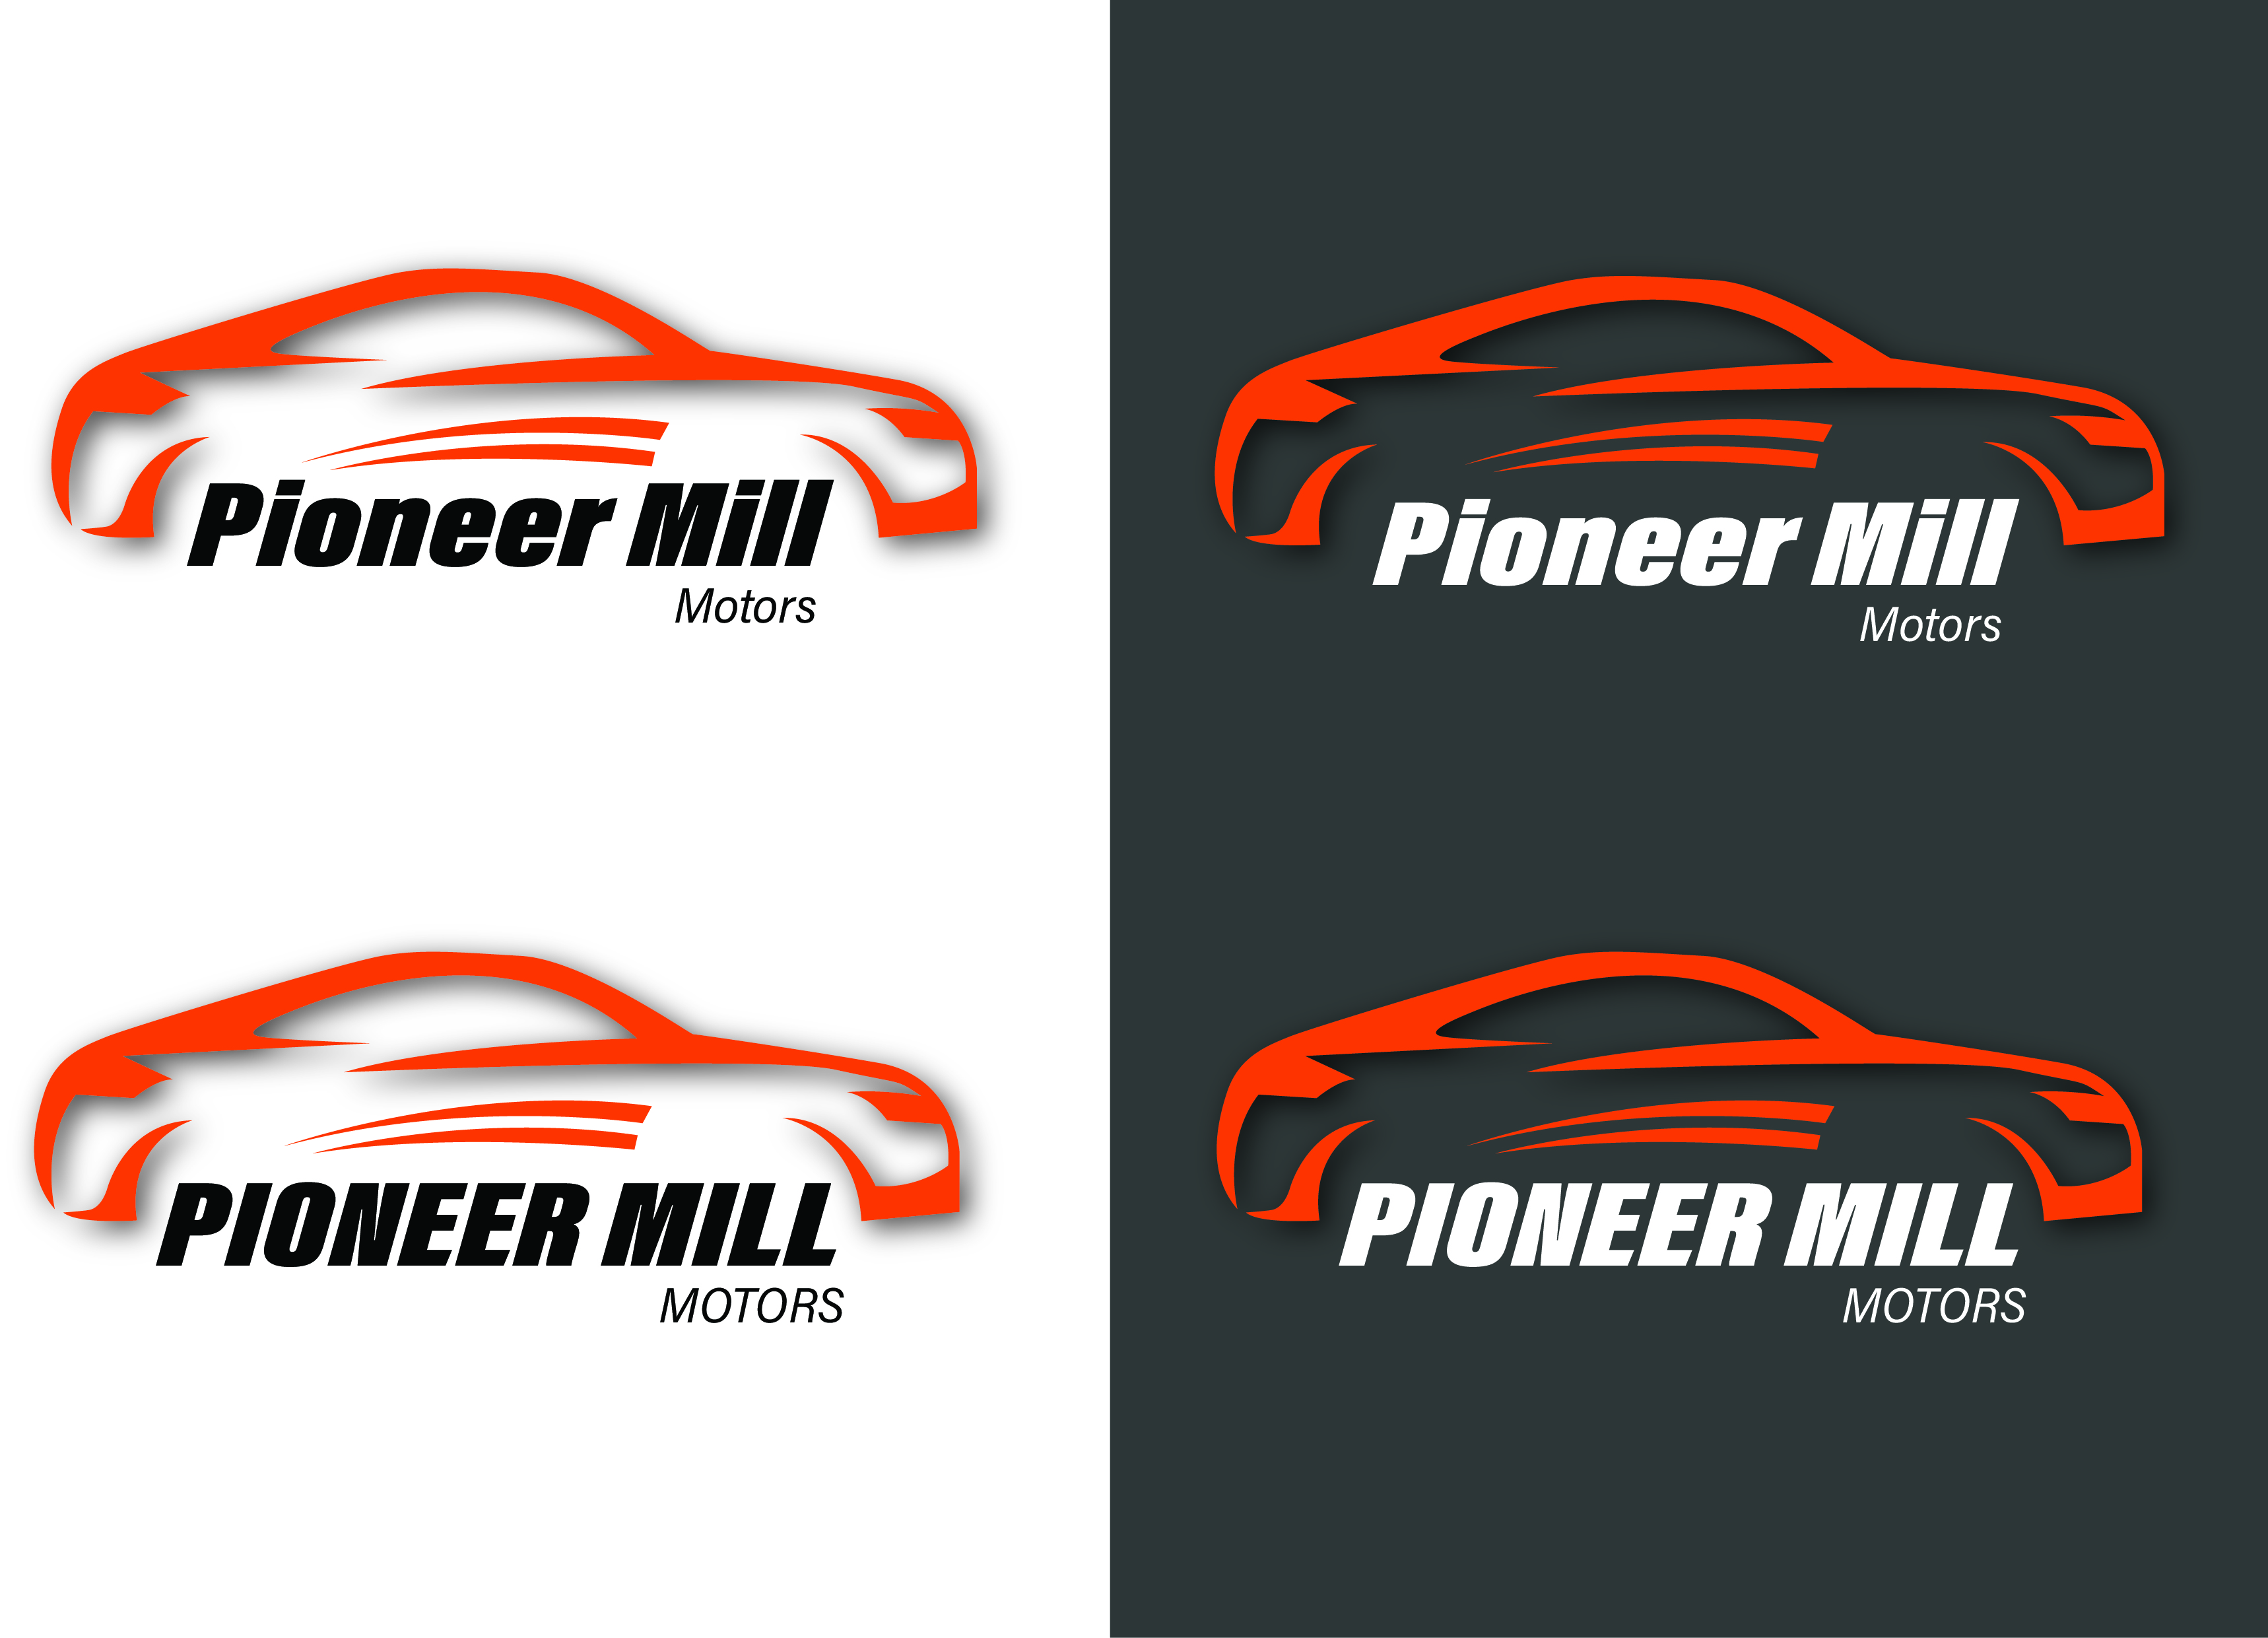 Pioneer Mill Motors